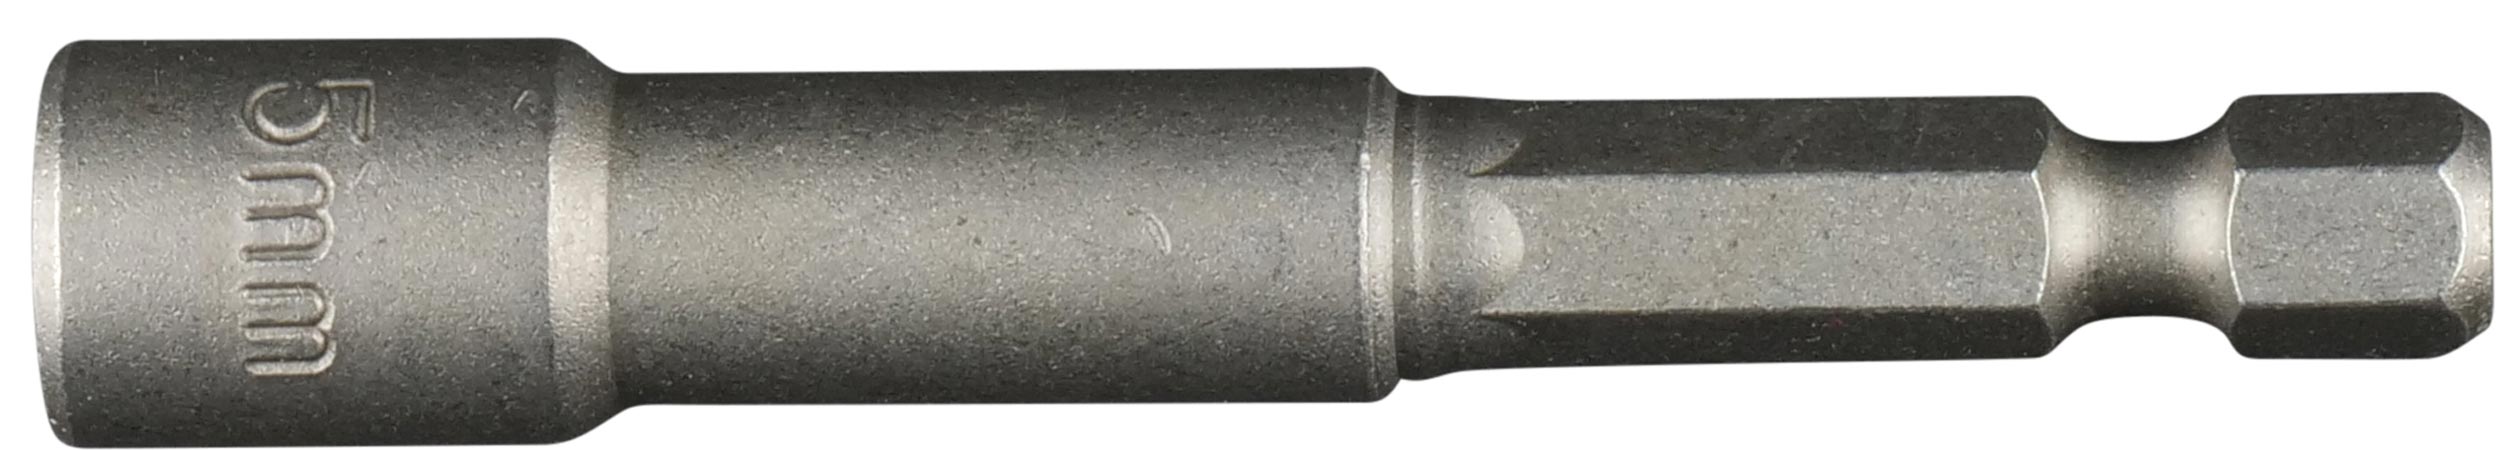 Felo Steckschlüsselbit E 6,3 mit Magnet SW 5,0 x 66 mm - VE 5 Stück Steckschlüssel Bit metrisch 1|4 Zoll (FL-03905010-VE5) Bild-01